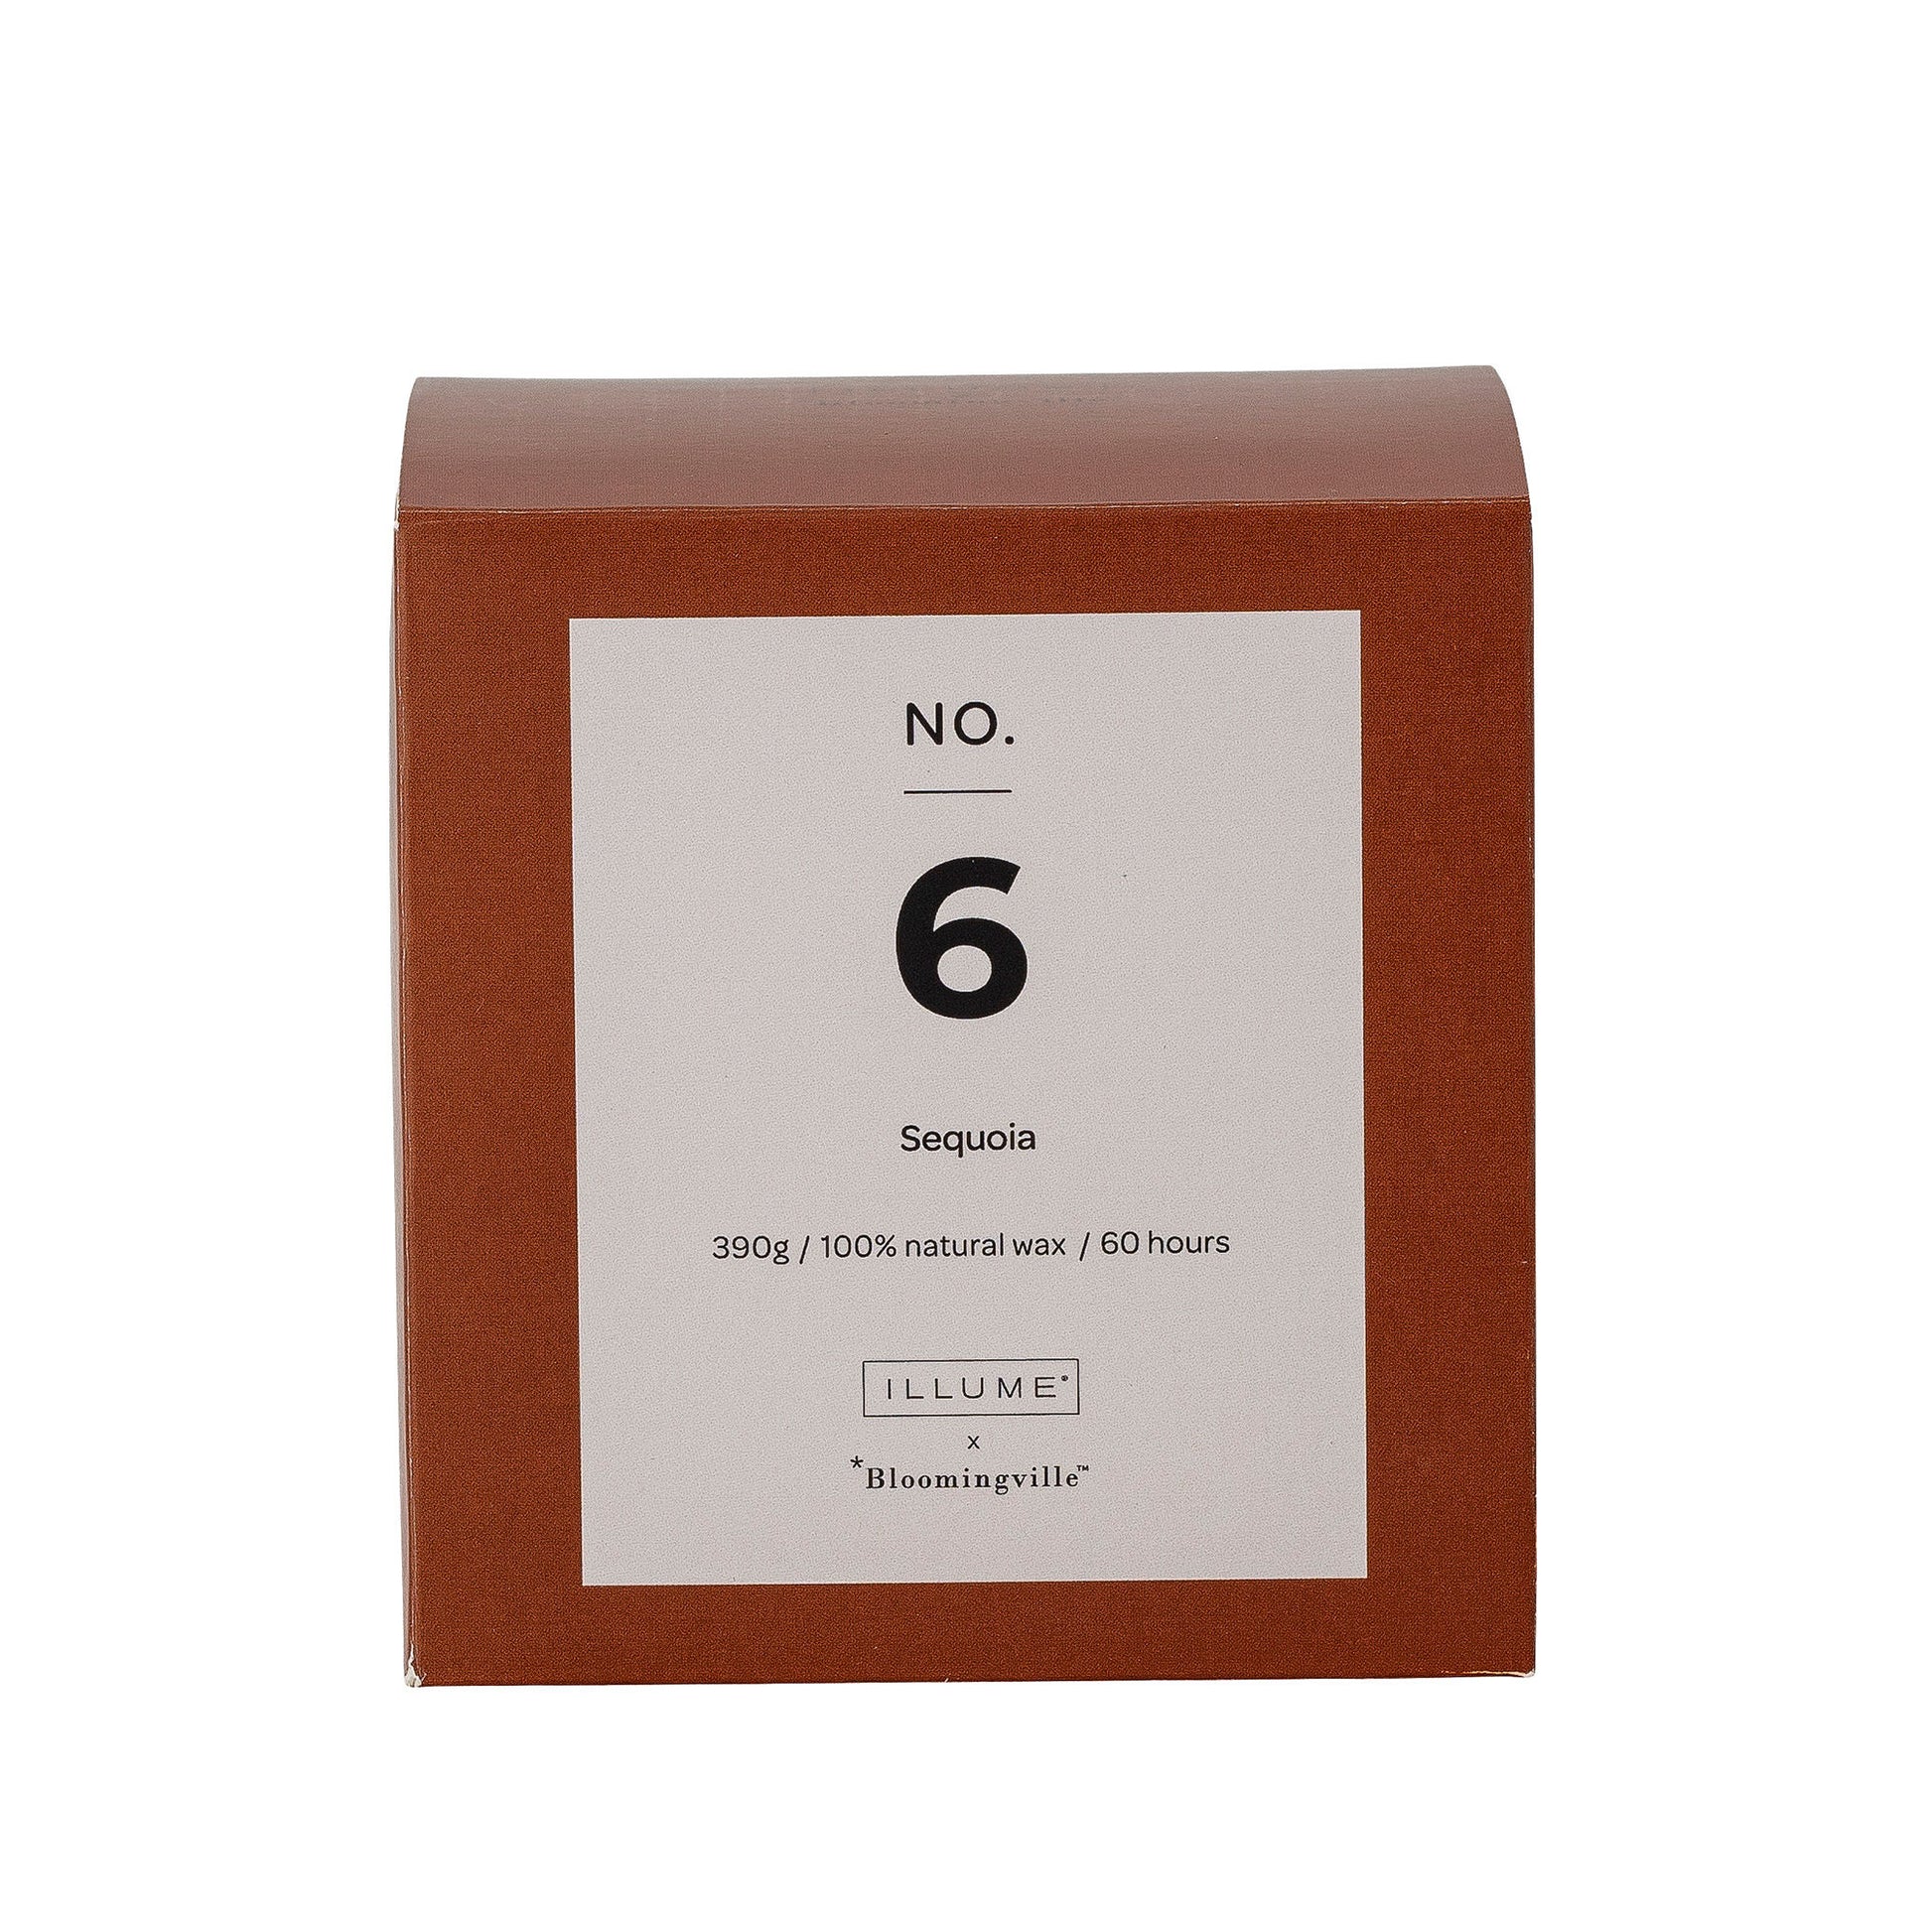 Bougie parfumée Illume X Bloomingville NO. 6 - Sequoia , Marron, Cire naturelle - maison bloom concept